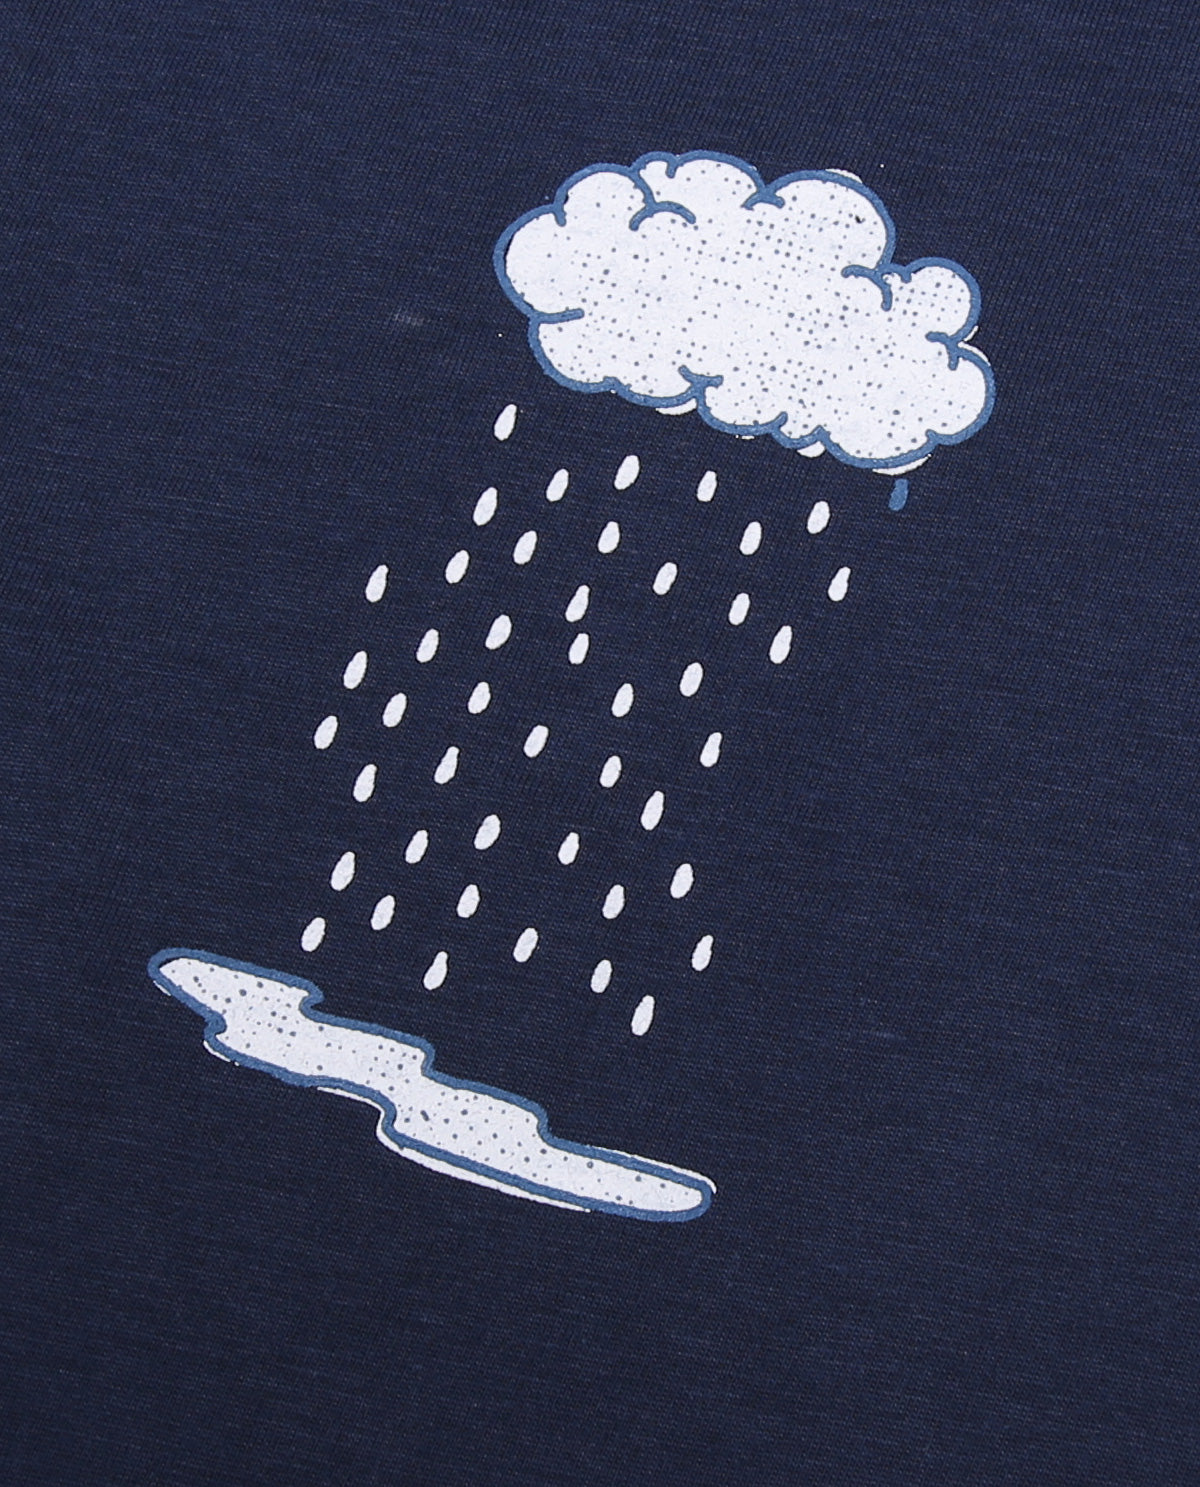 Wadezig! T-Shirt - Rainy Simply Navy